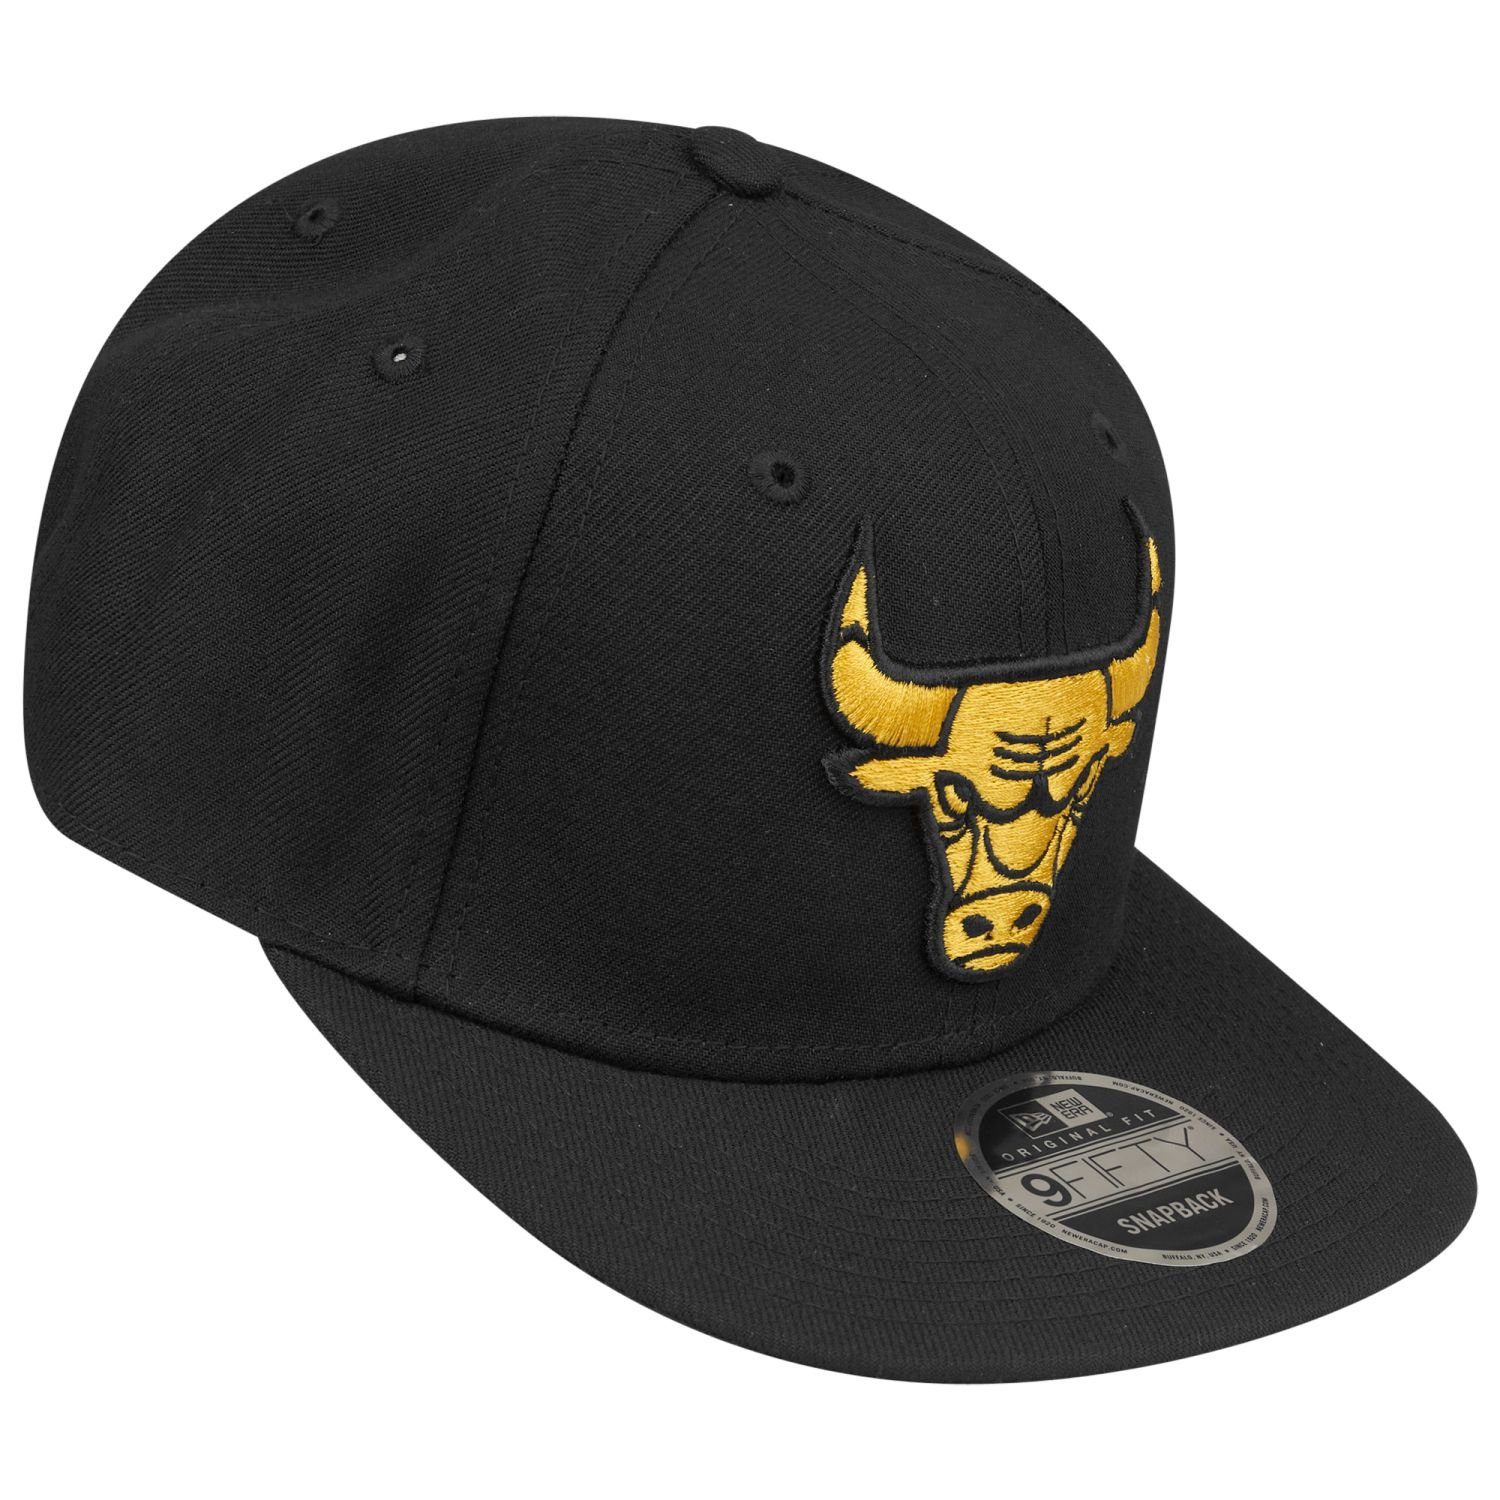 New Chicago 9Fifty Original Era Snapback Cap Bulls